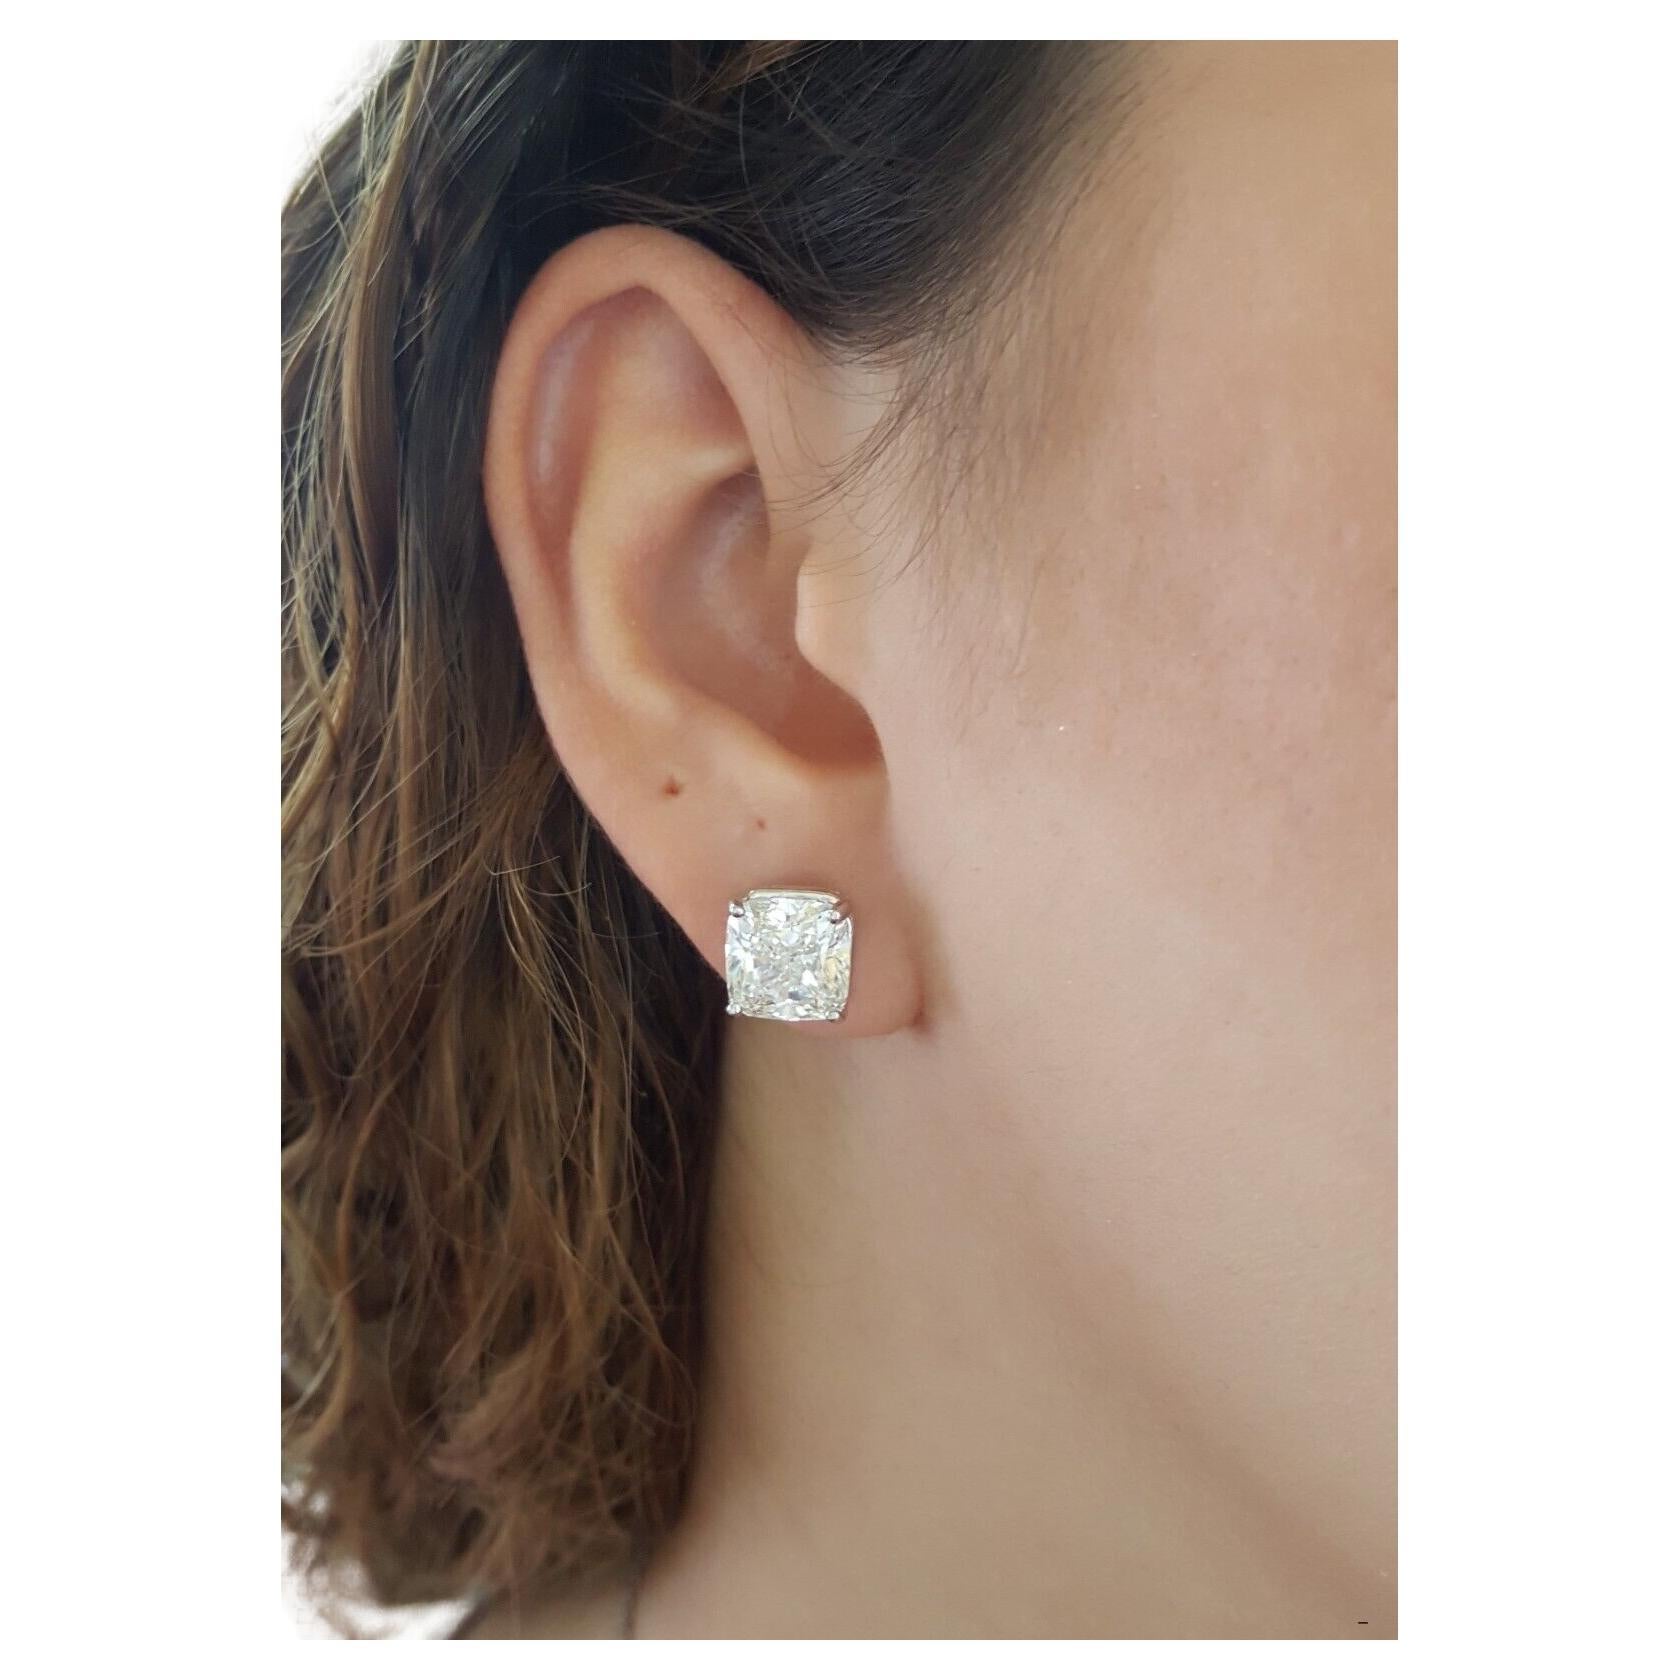 Erhöhen Sie Ihren Stil mit diesen exquisiten Platin-Ohrsteckern, die jeweils mit einem bemerkenswerten 4-Karat-Diamanten der Farbe J und der Reinheit VS2 geschmückt sind. Die zeitlose Eleganz dieser Ohrringe ist unvergleichlich und macht sie zum